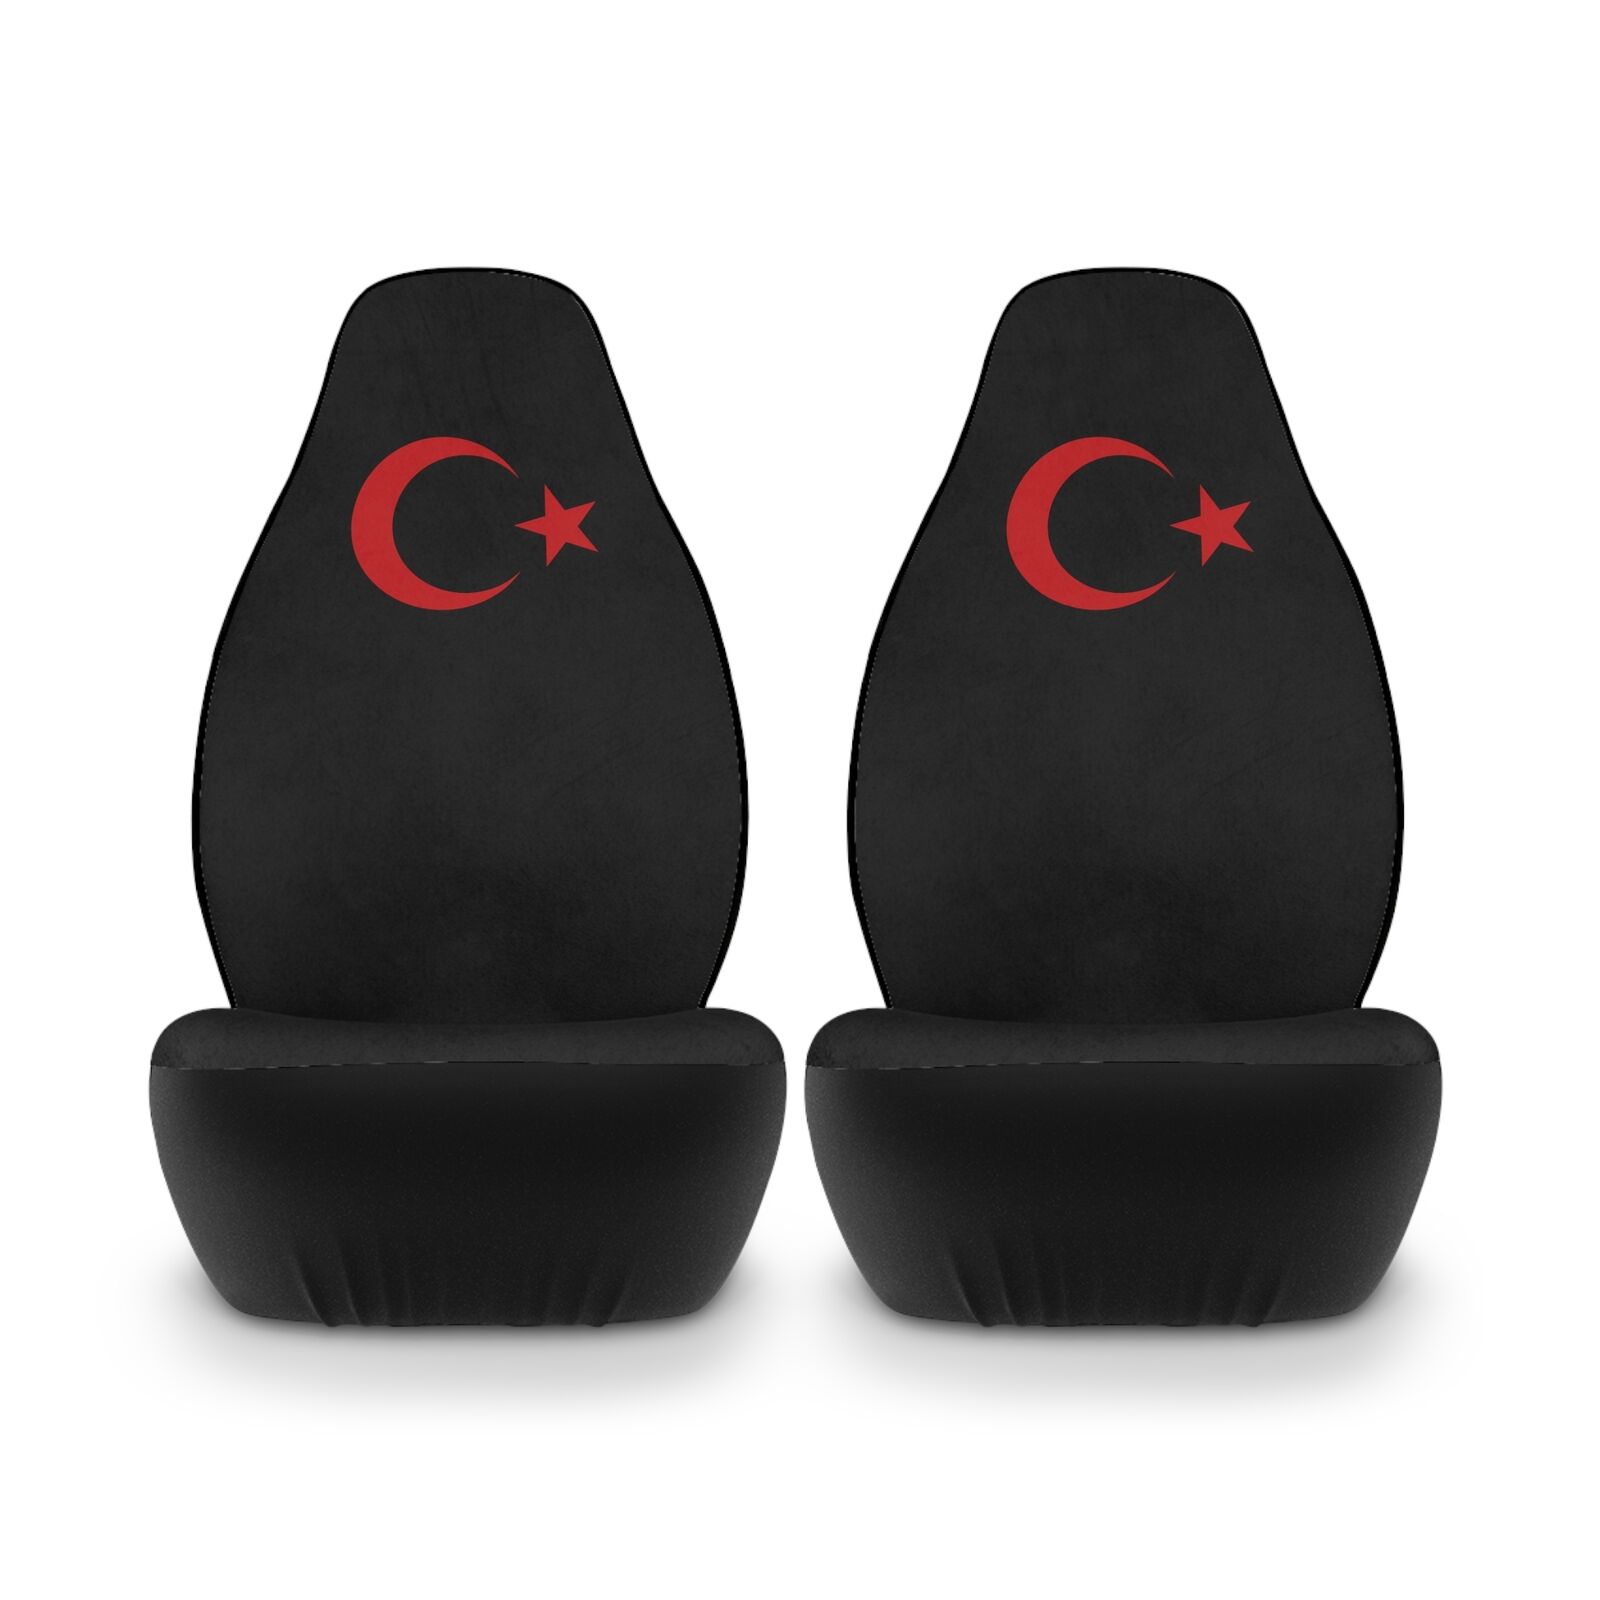 Turkish Logo Car Seat Cover